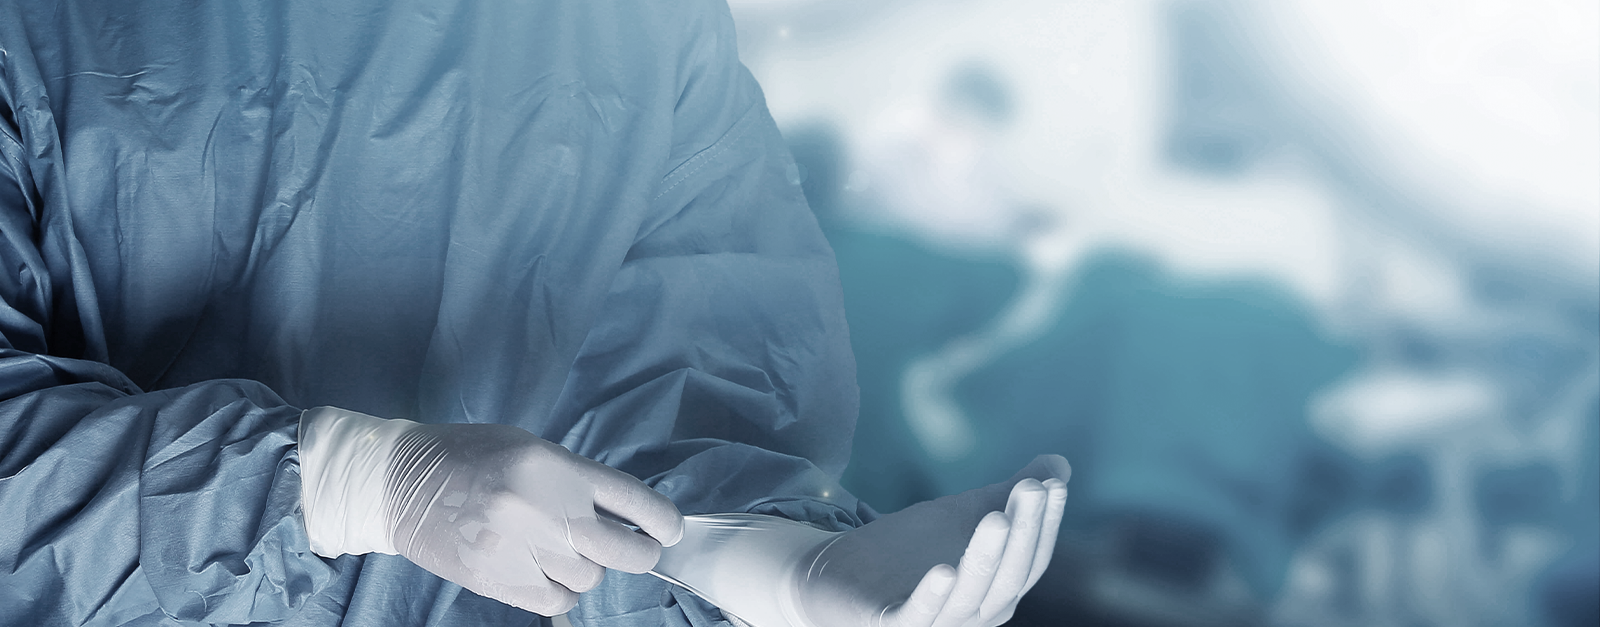 Насколько безопасна анестезия? 5 популярных мифов